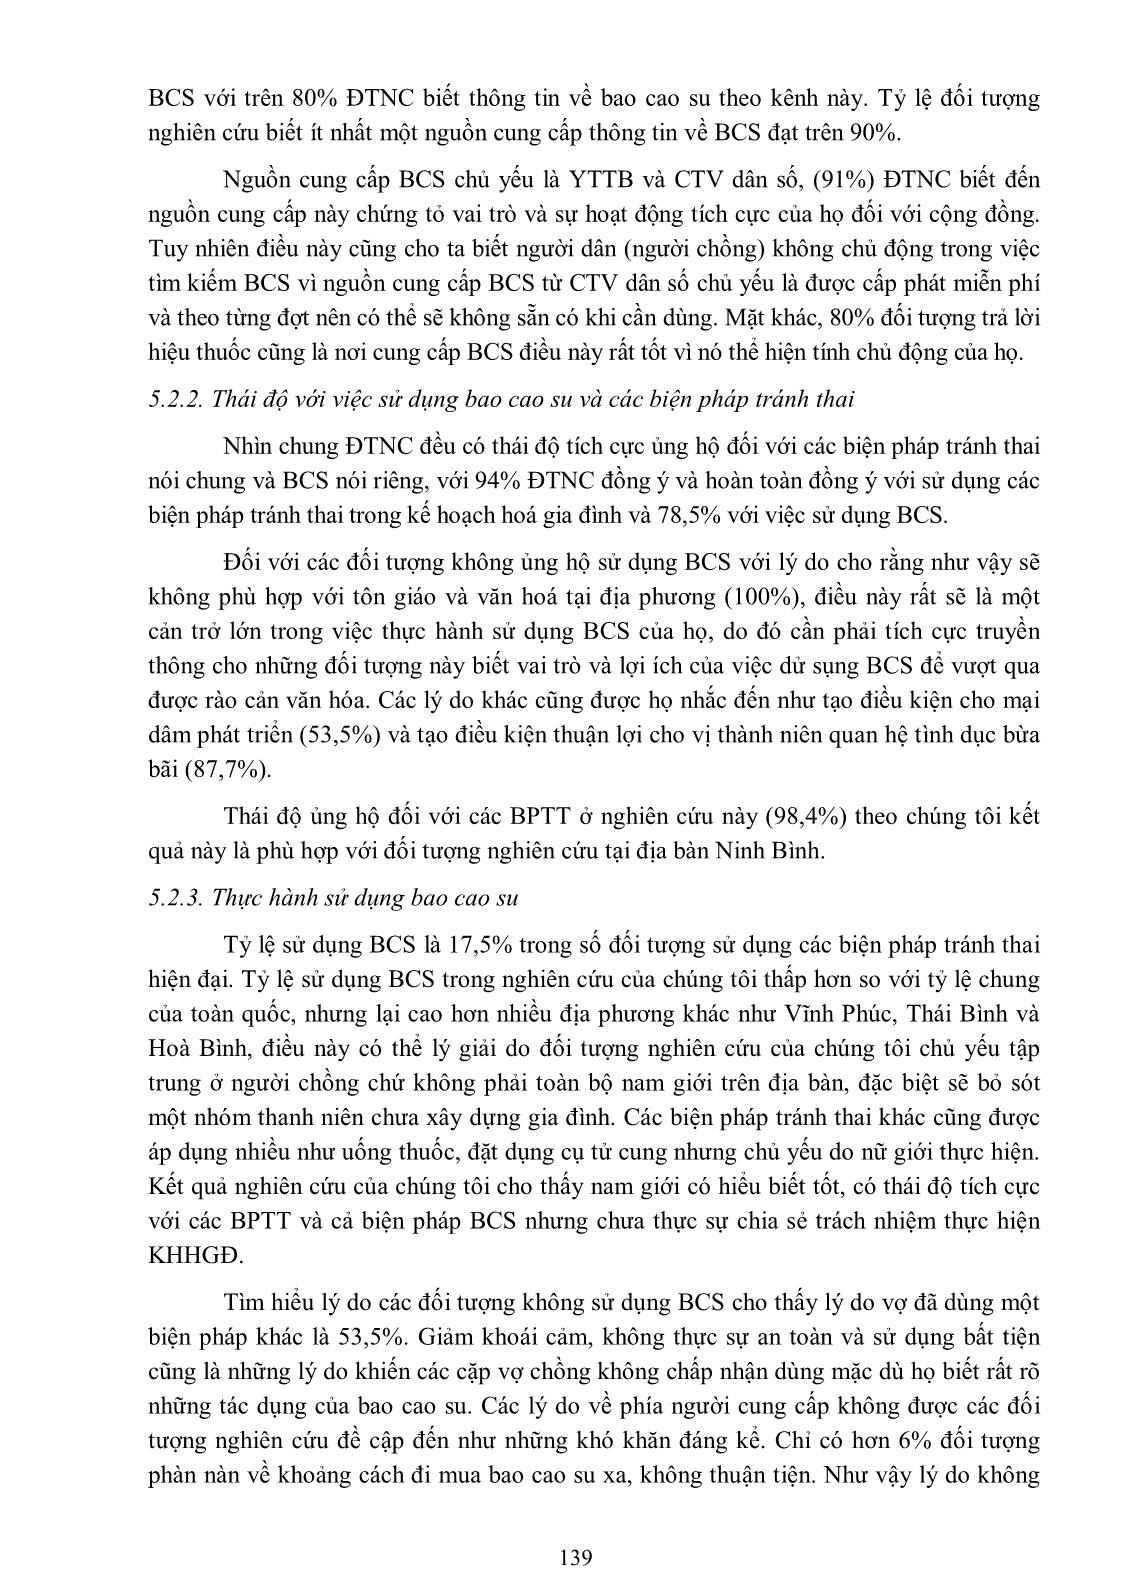 Mô tả kiến thức, thái độ và thực hành sử dụng bao cao su trong kế hoạch hóa gia đình của nam giới có vợ tại xã Thượng Kiệm, huyện Kim Sơn, tỉnh Ninh Bình năm 2013 trang 9